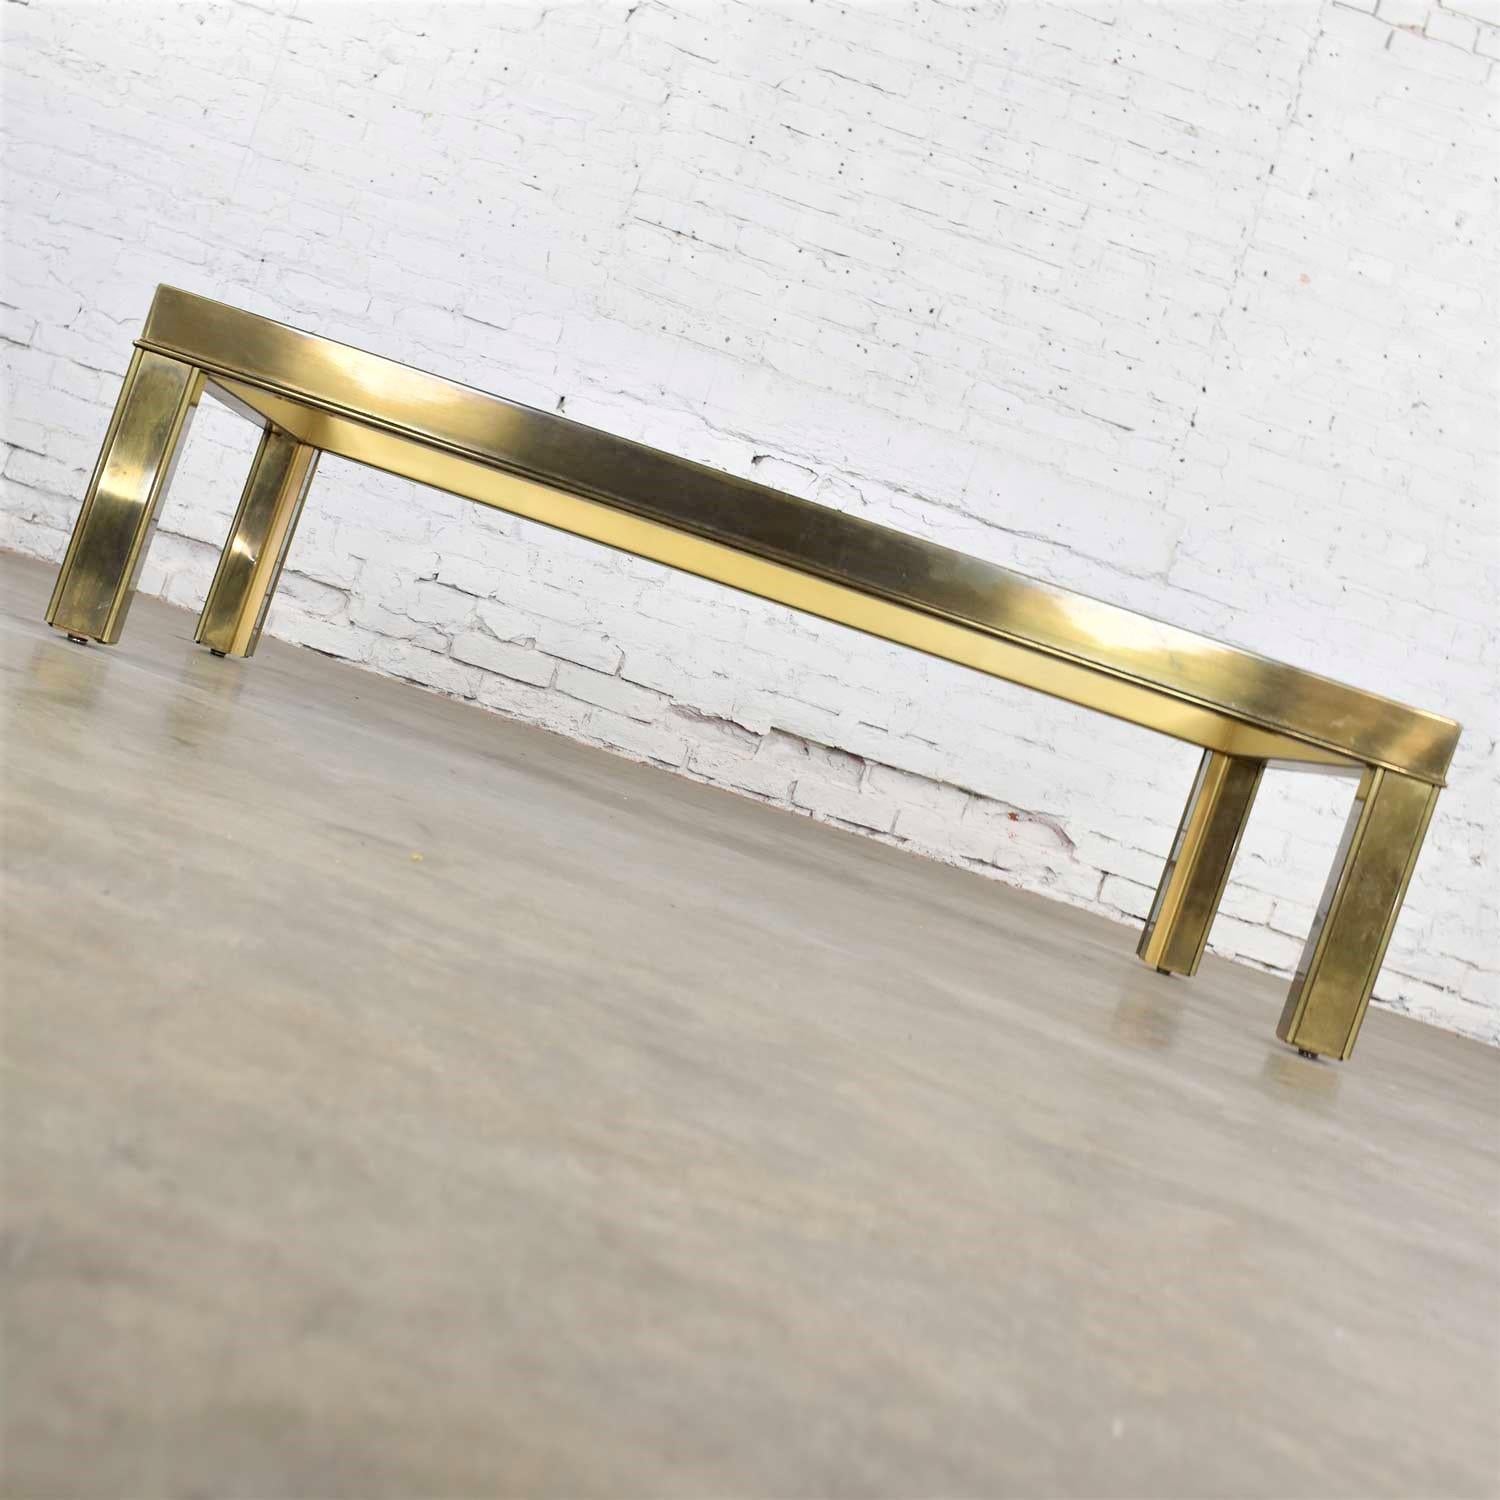 mastercraft brass coffee table